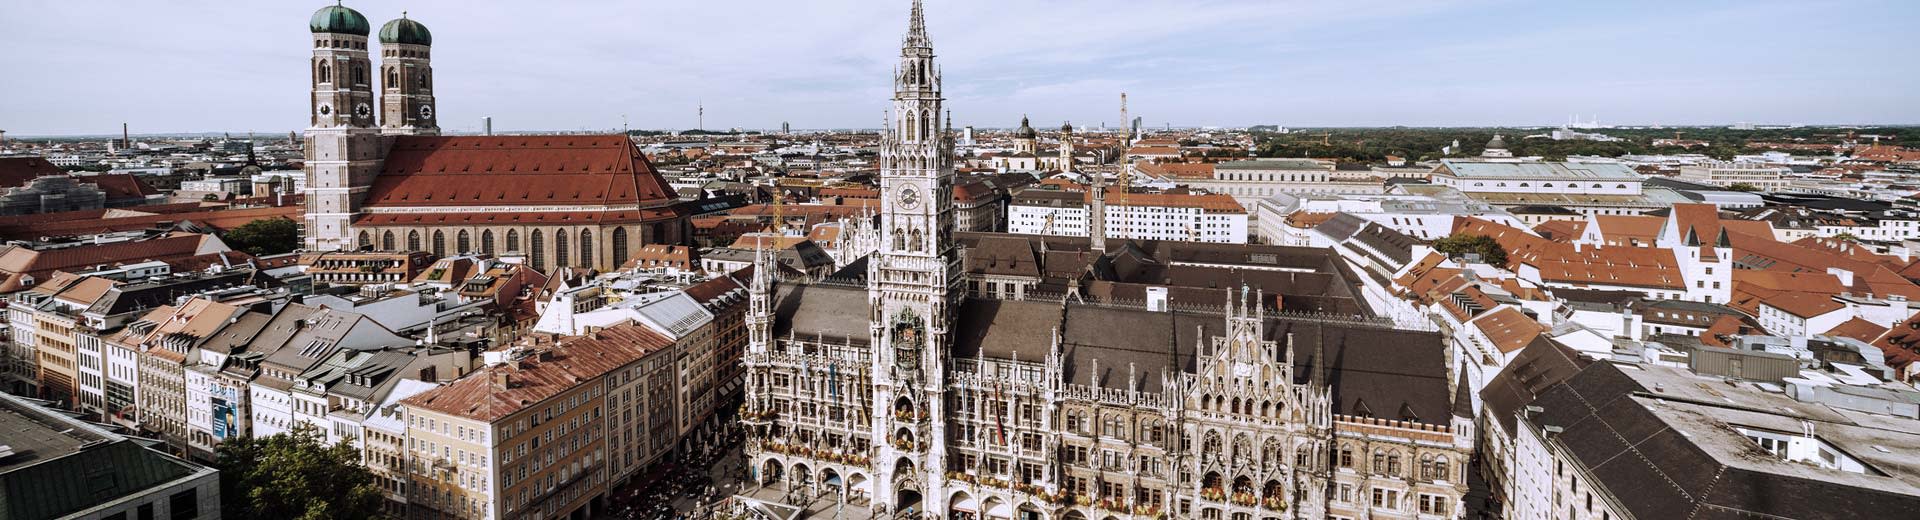 Una hermosa plaza de la ciudad en Munich en un día despejado, con campesinos de iglesias que dominan el horizonte.